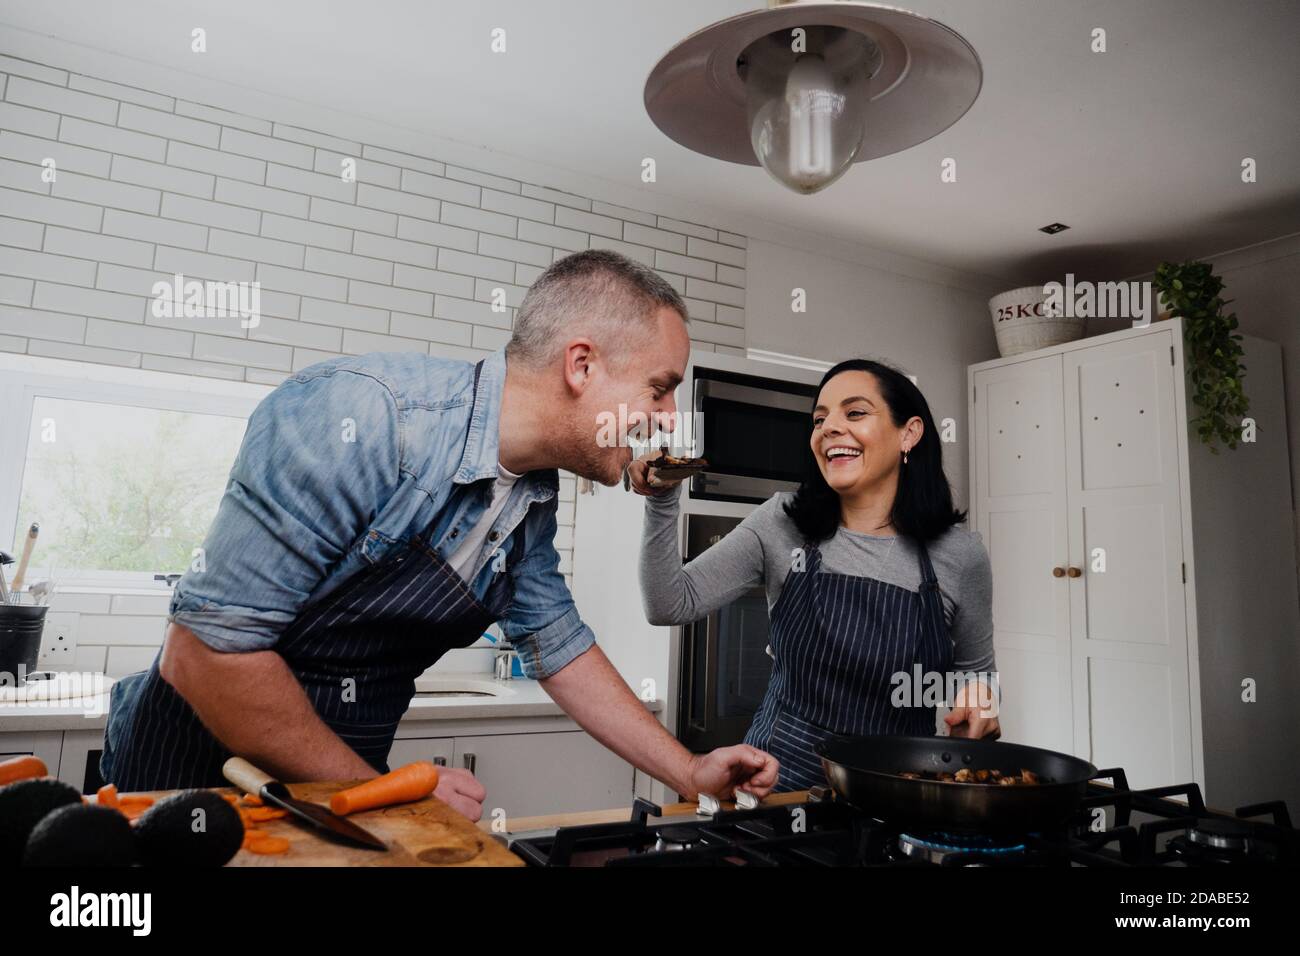 La femme fait goûter à la cuillerée du dîner à son mari tout en préparant le dîner dans une cuisine de luxe. Banque D'Images